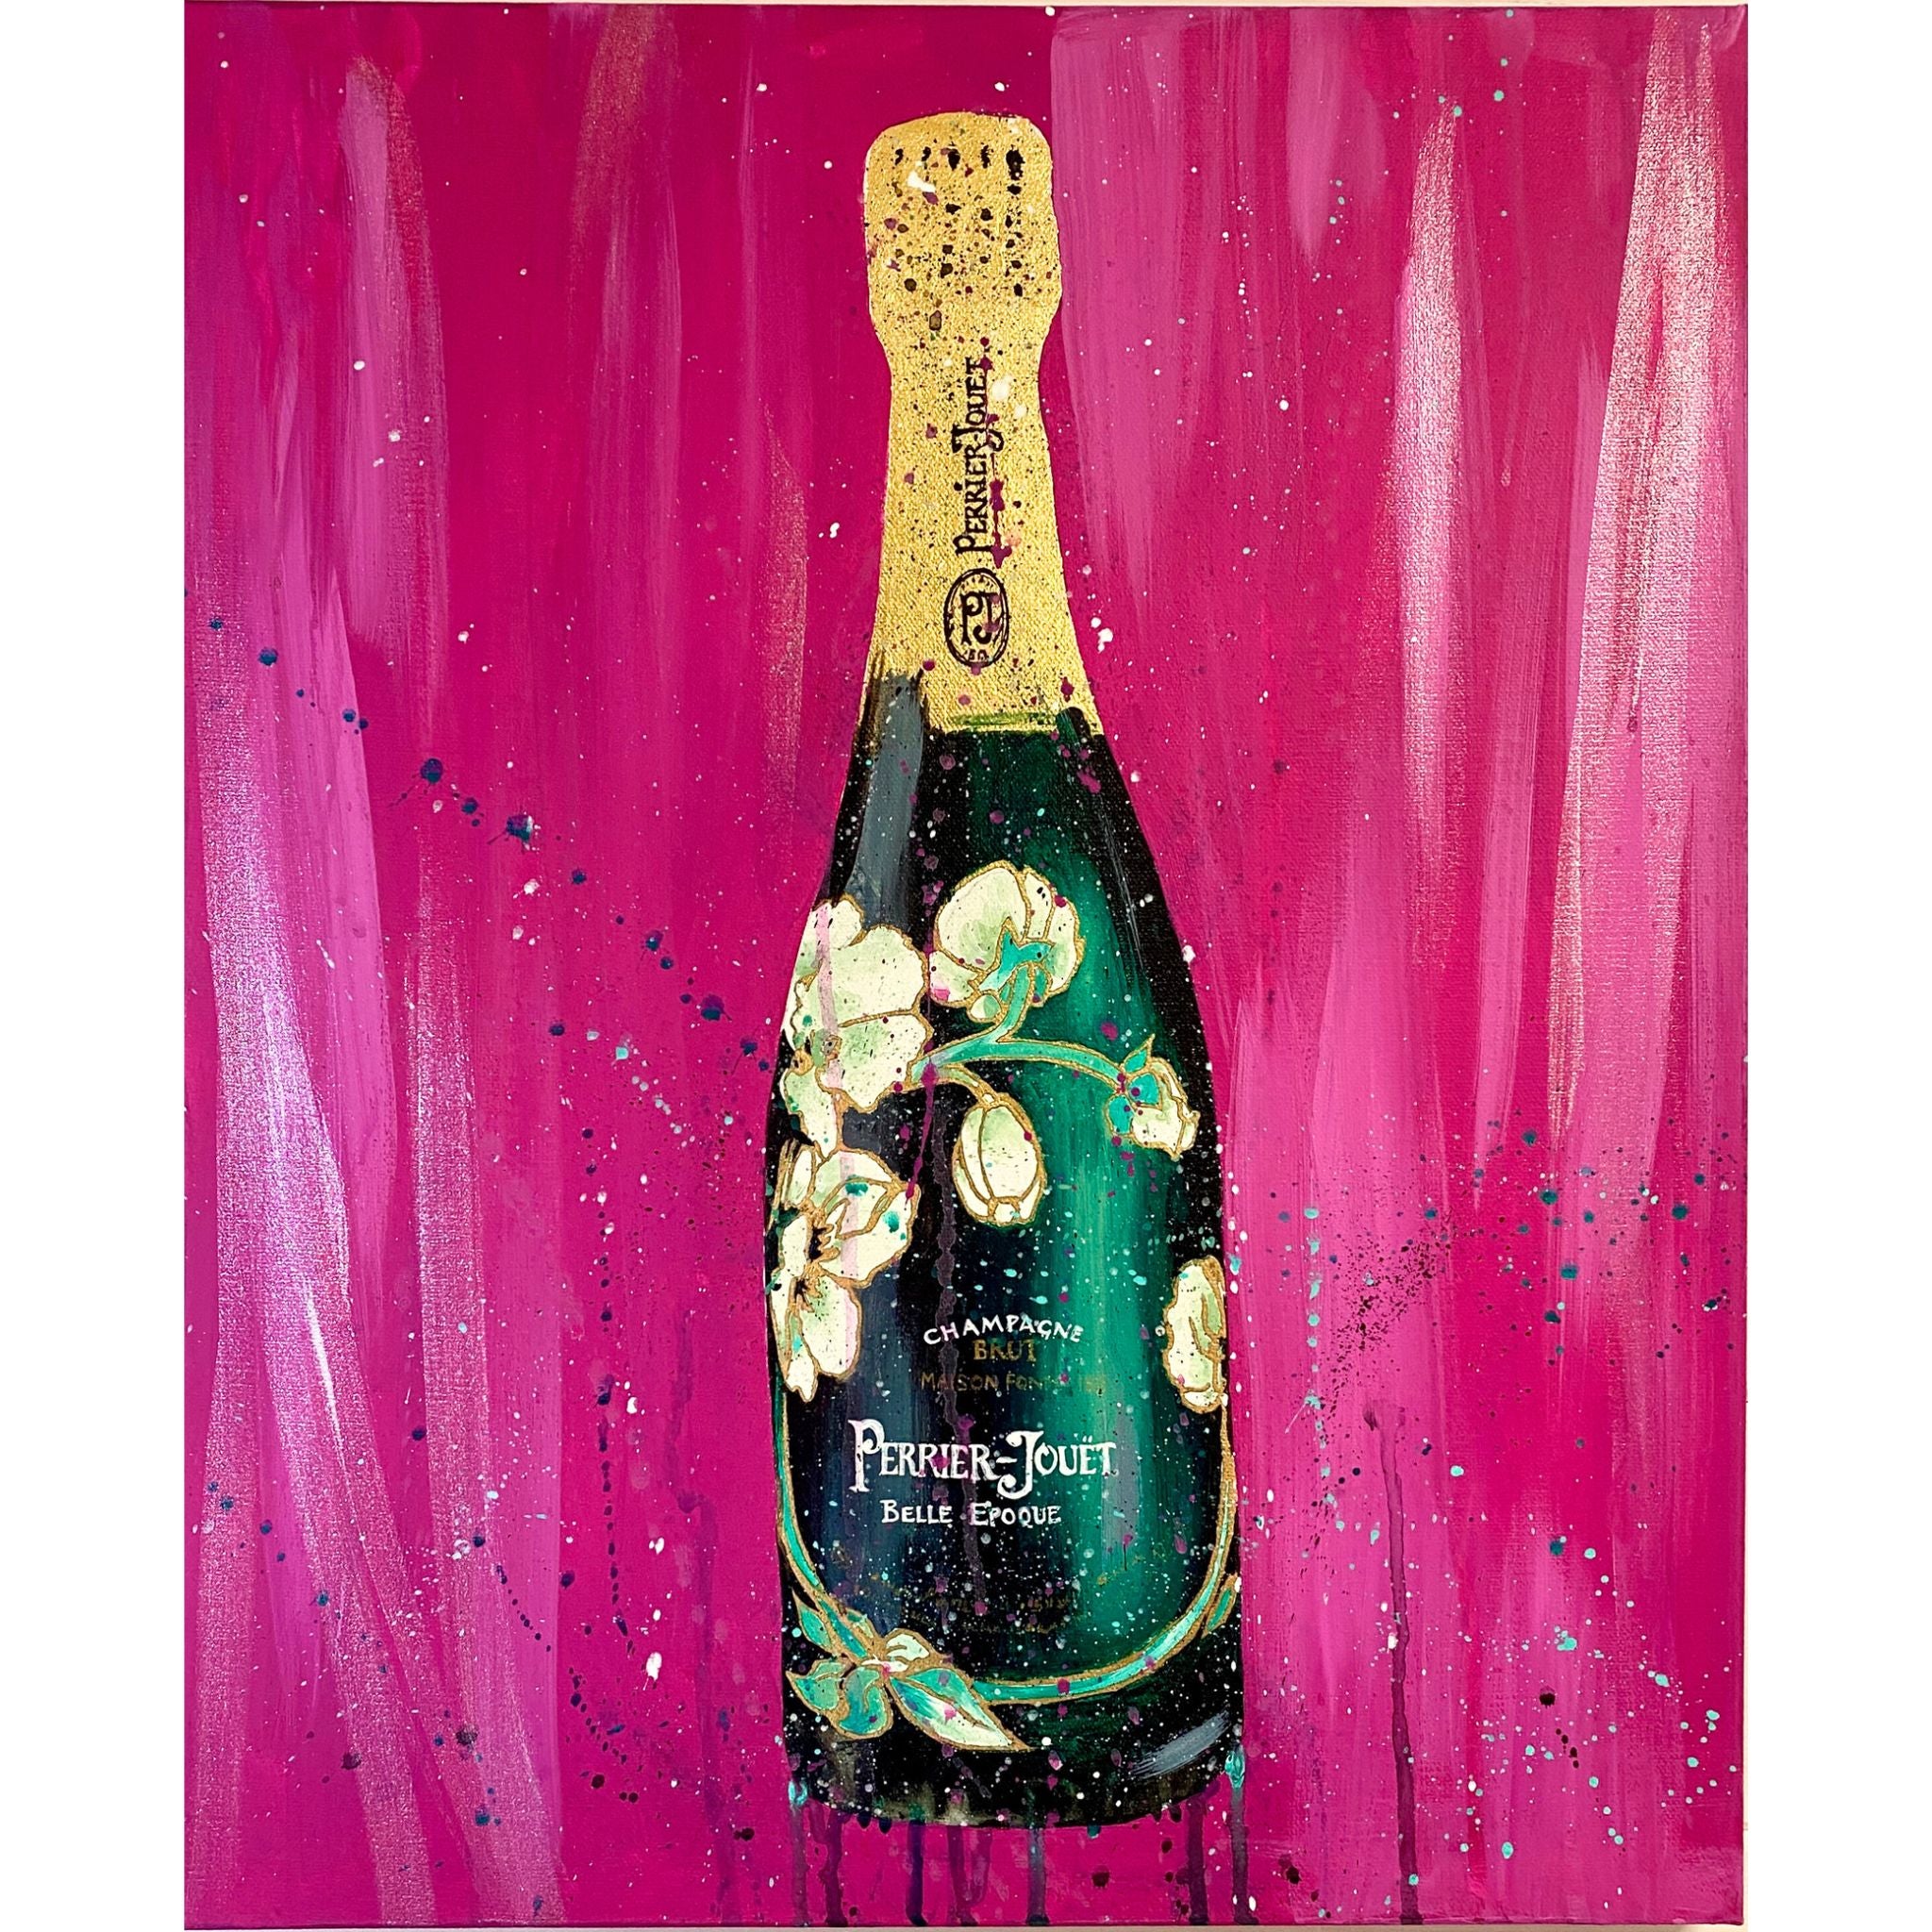 Champagne Bottle Art - Perrier Jouet on Pink